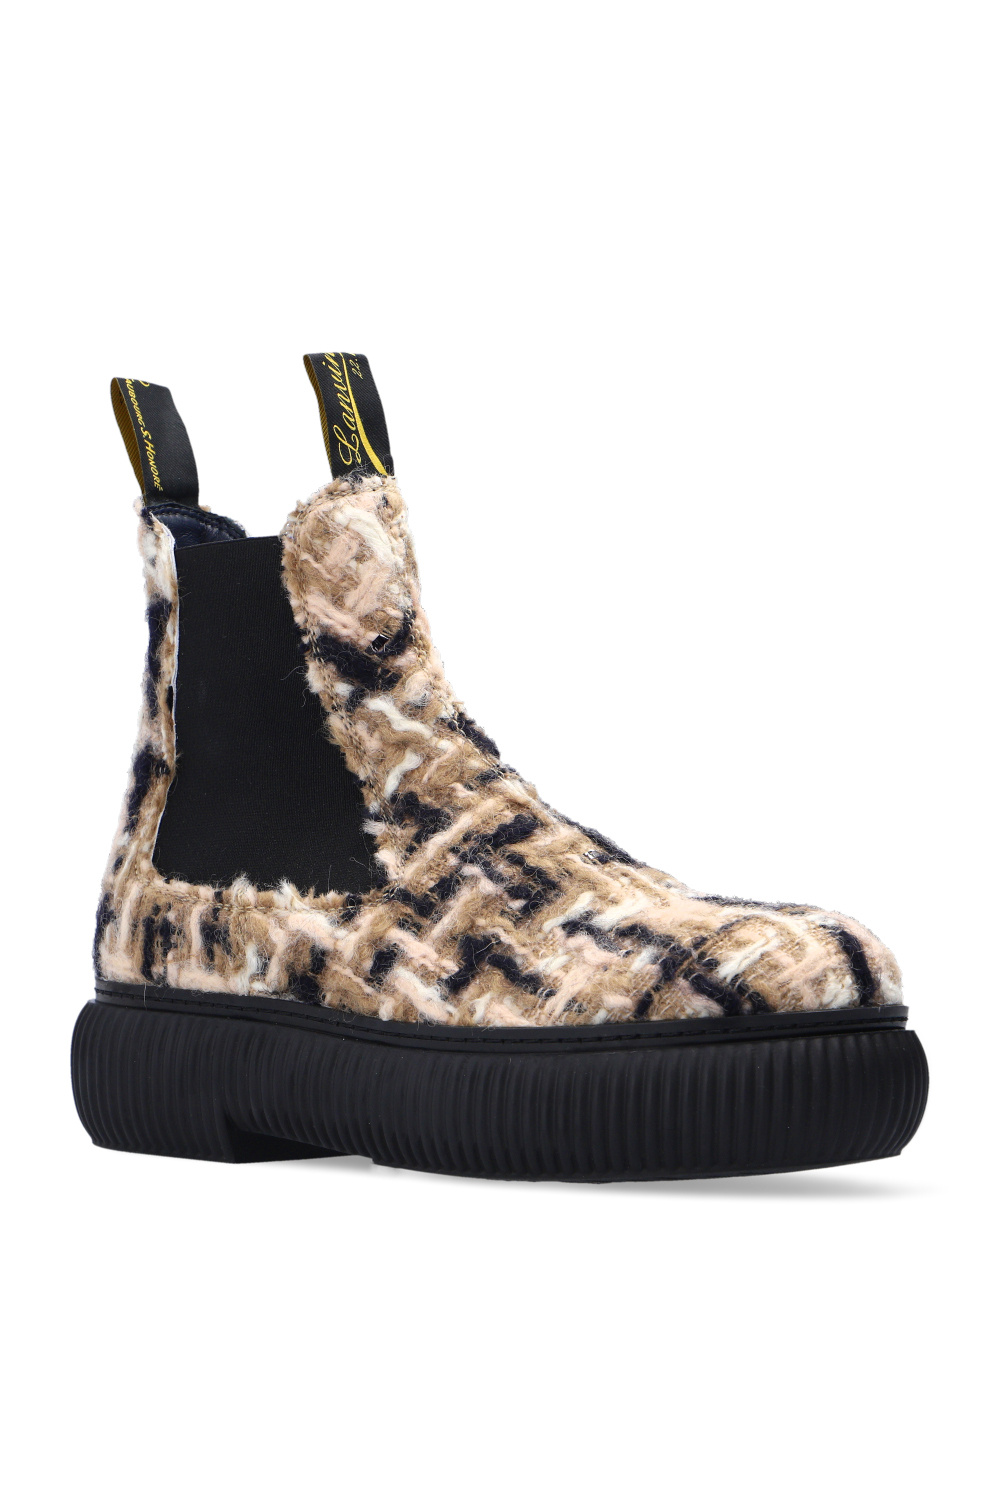 Lanvin ‘Arpge’ tweed boots